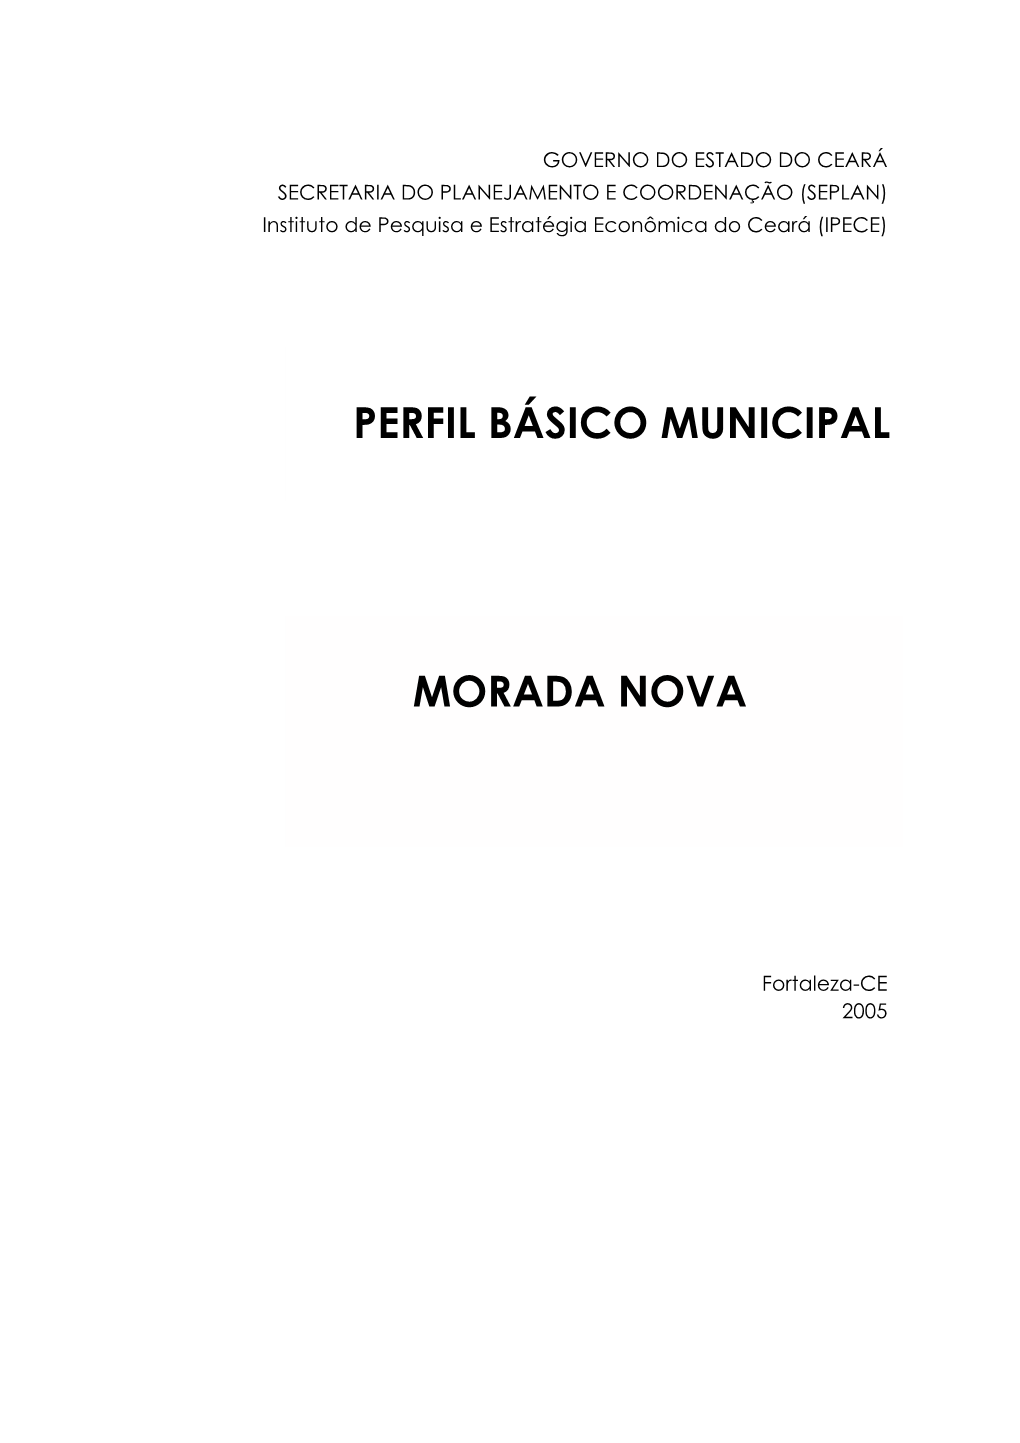 Perfil Básico Municipal MORADA NOVA 5